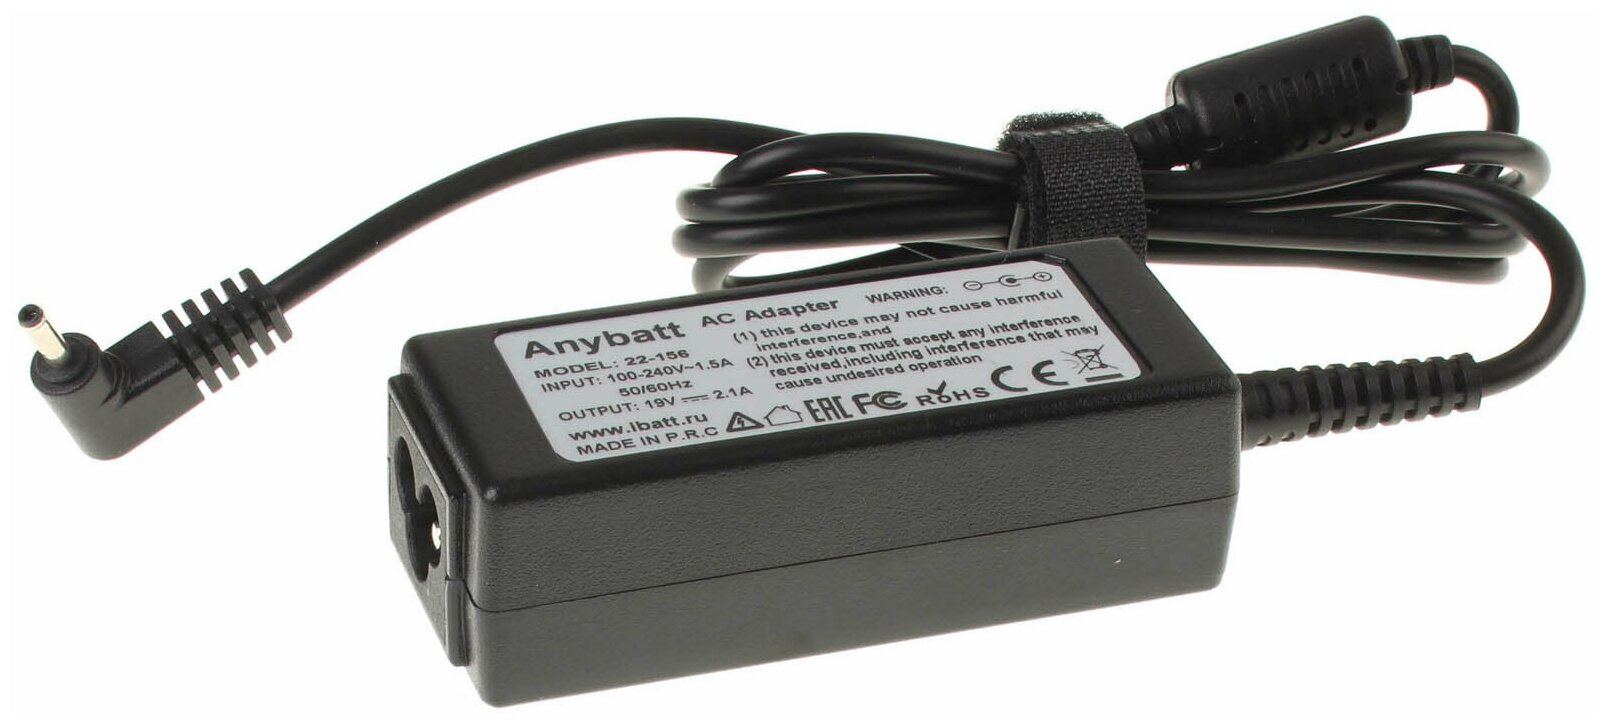 Блок питания Anybatt 22-B1-156 19V 21A 40W разъём 3.0*0.8 mm для Samsung PA-1400-14 AD-4019P A13-040N2A